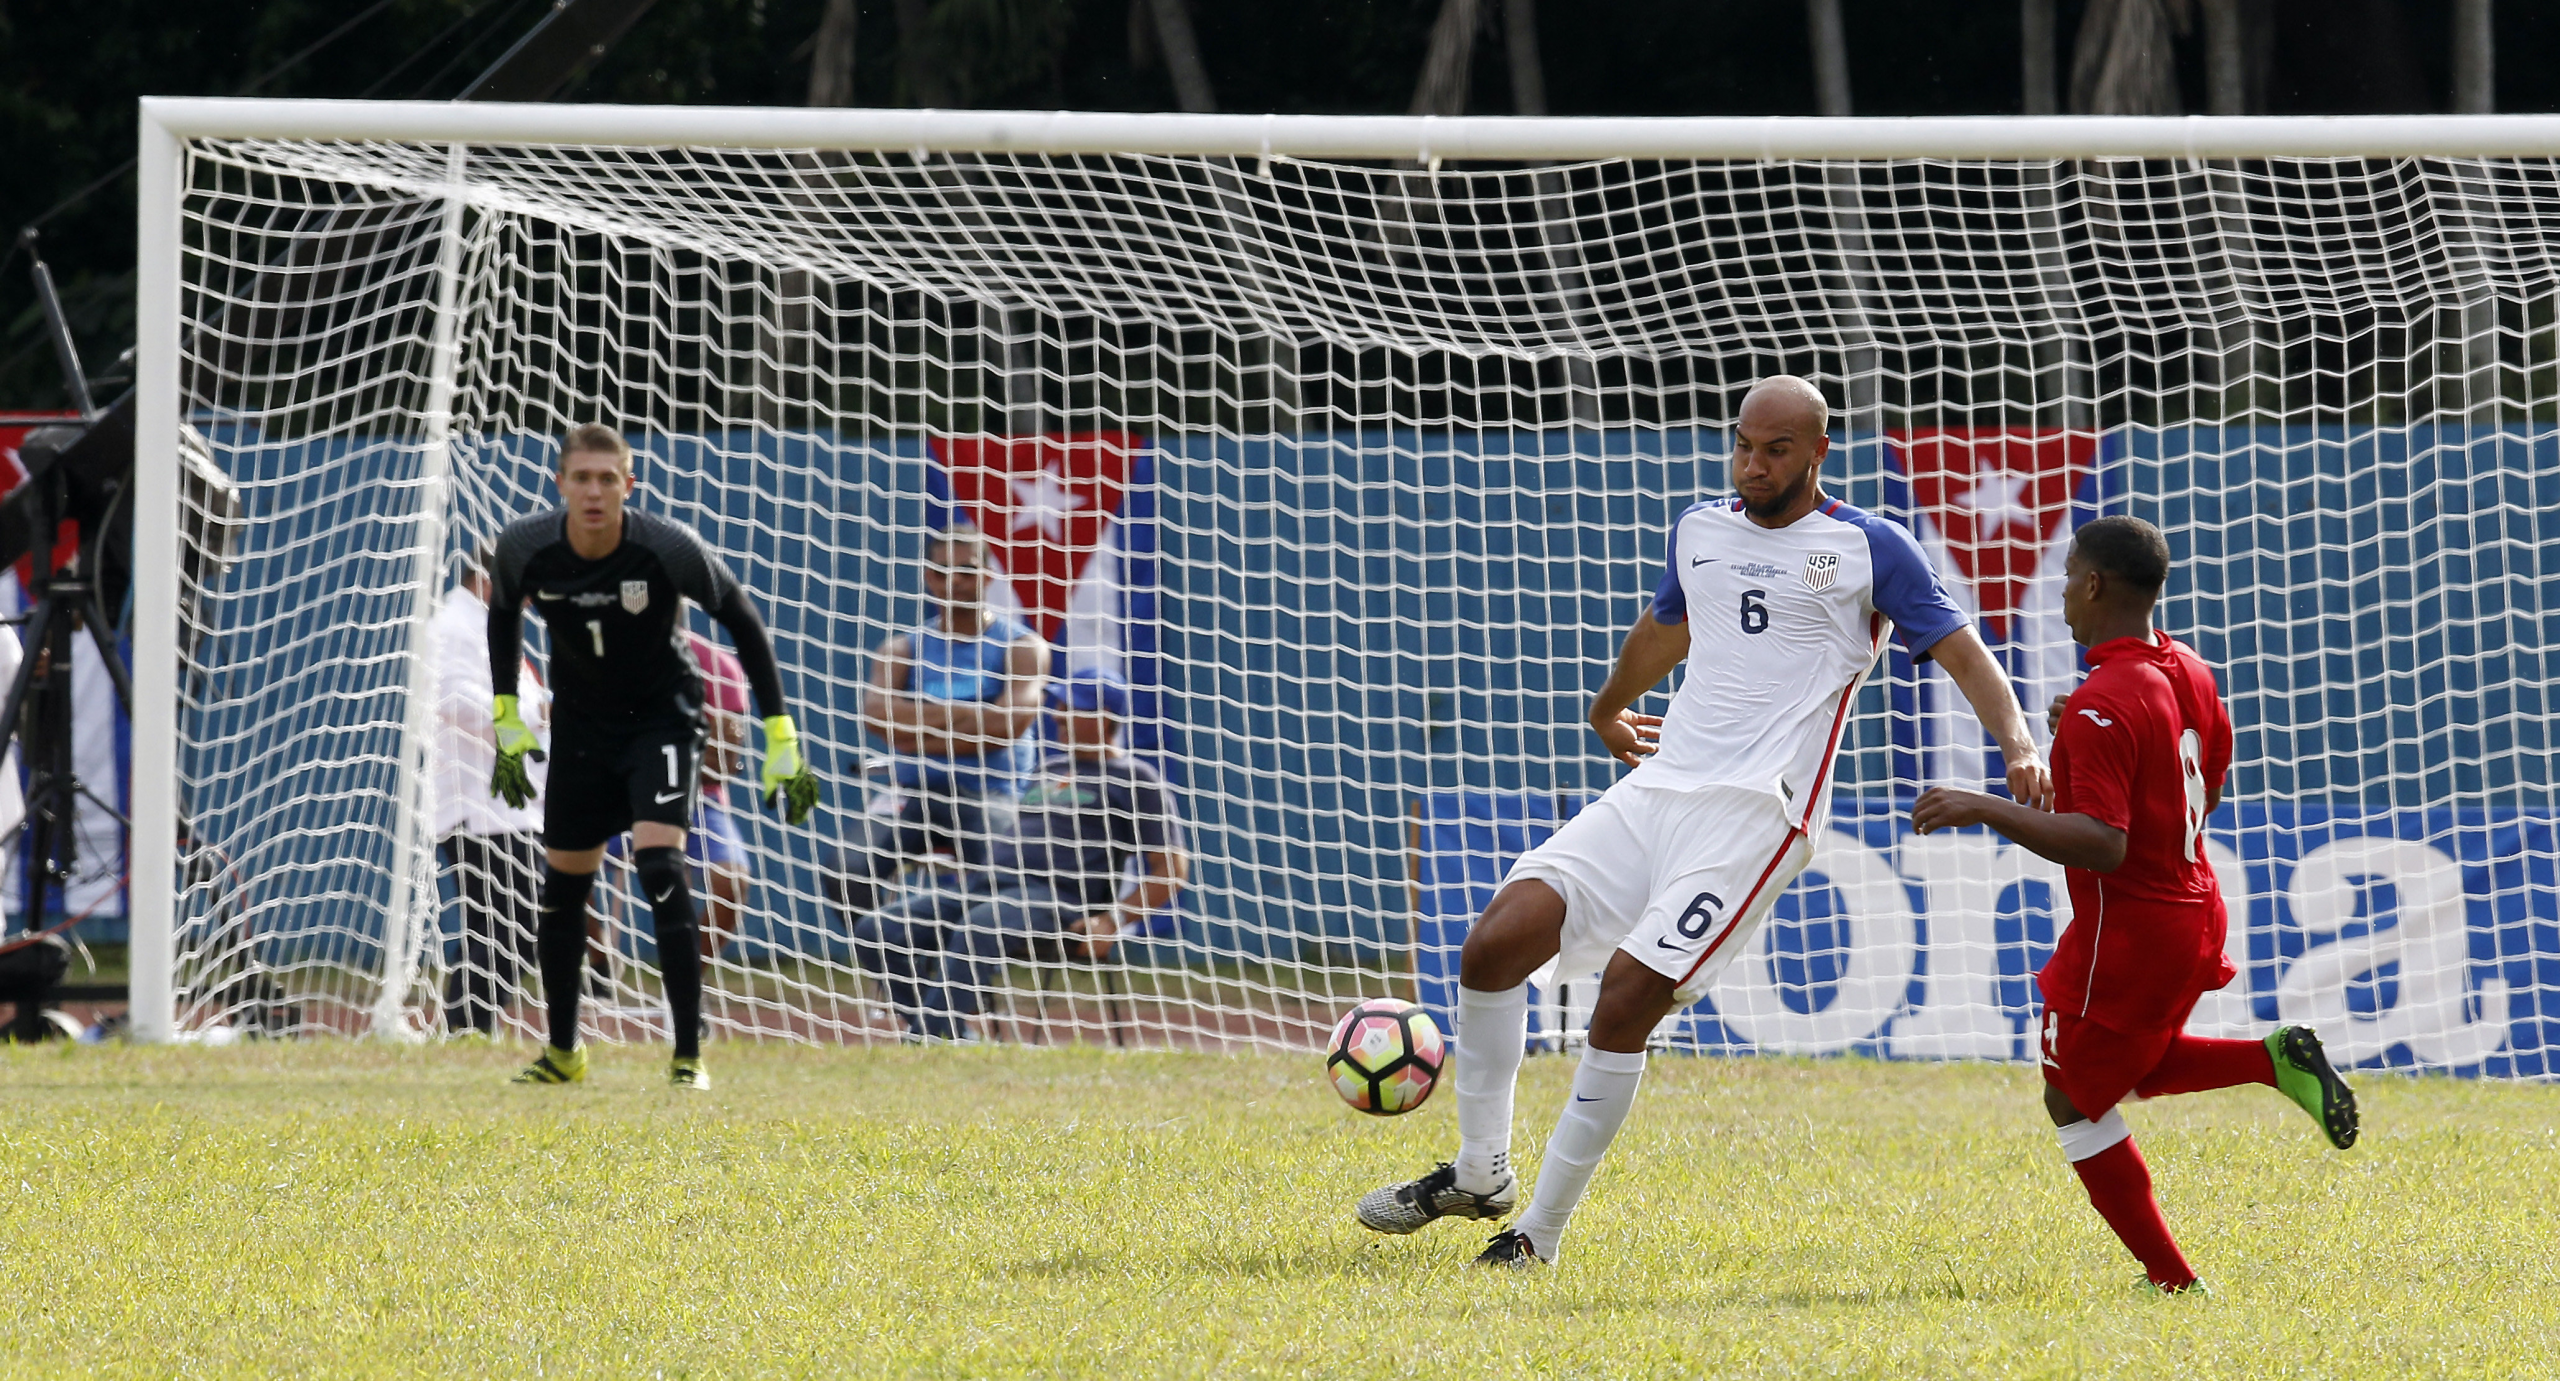 wp image 436343 scaled - La selección de fútbol de EE.UU. gana 2-0 a Cuba en el primer amistoso tras el deshielo